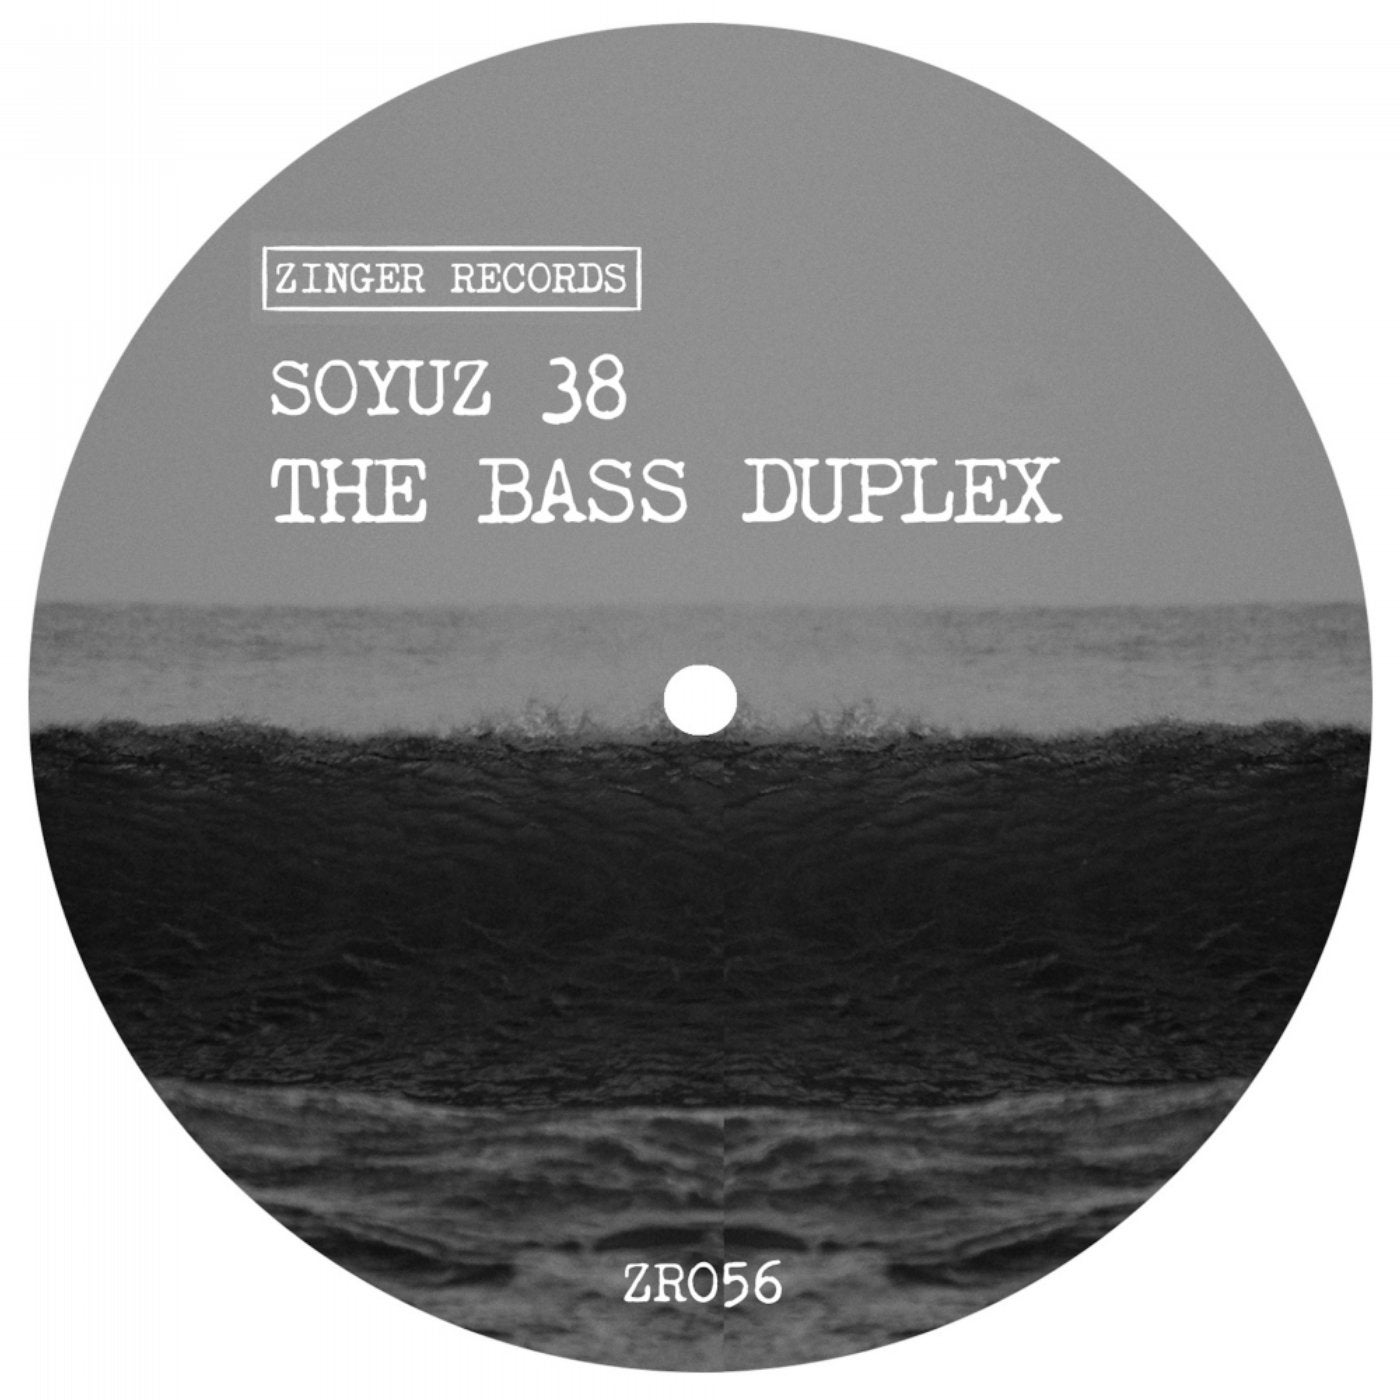 The Bass Duplex